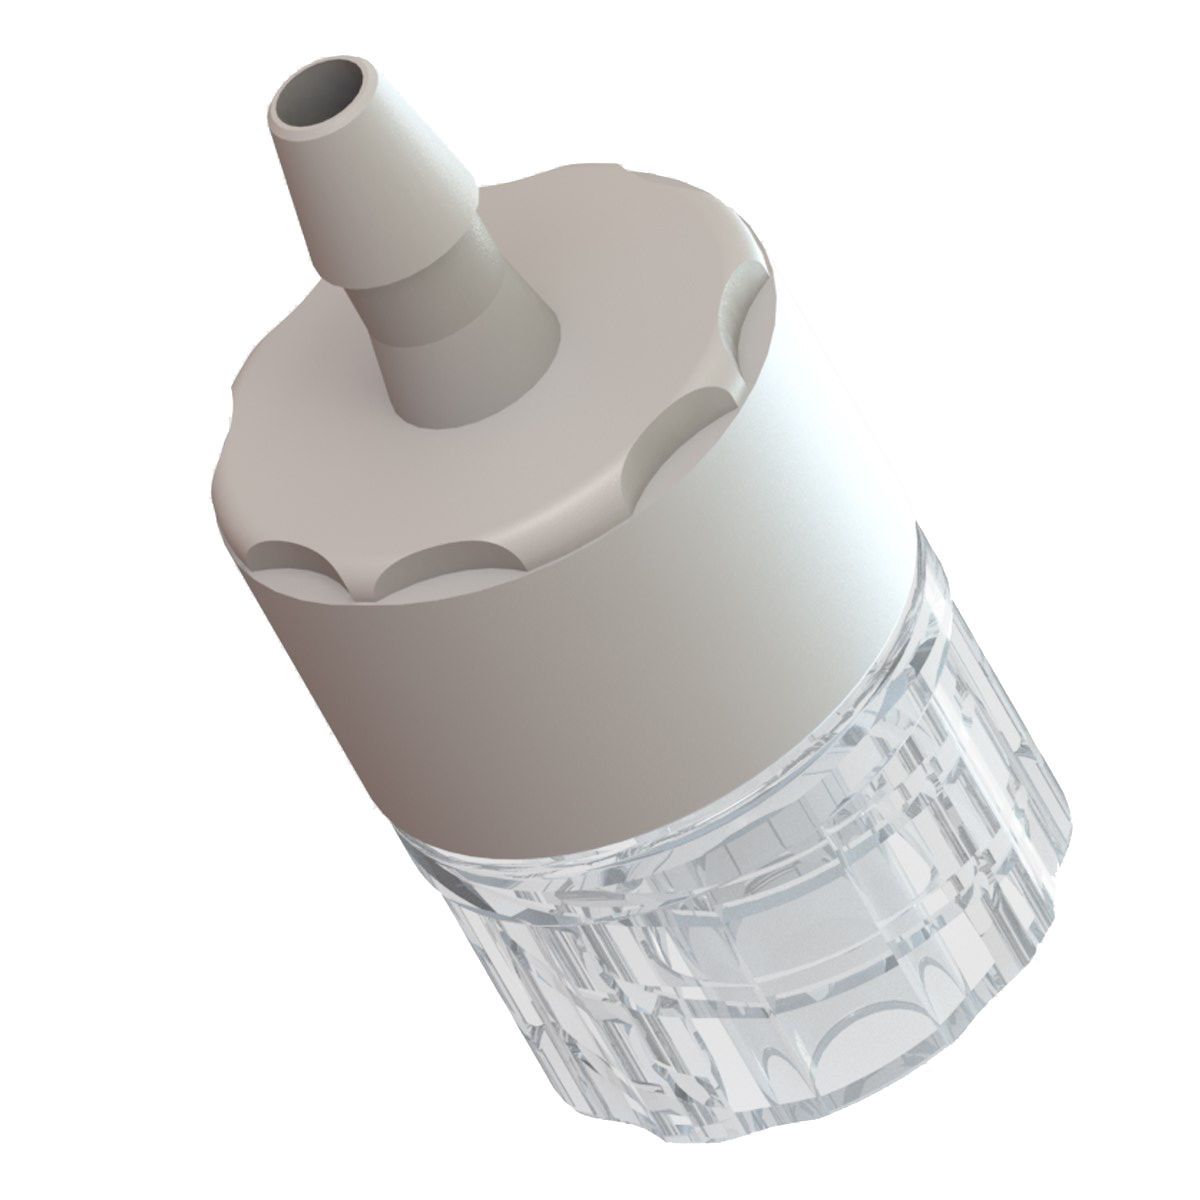 Luer-Filter 1/32 Schlauchanschluss auf männlich Luer-Lock, ABS-Körper, Polystyrol- und Glasfaserfilter, ISO 80369-7